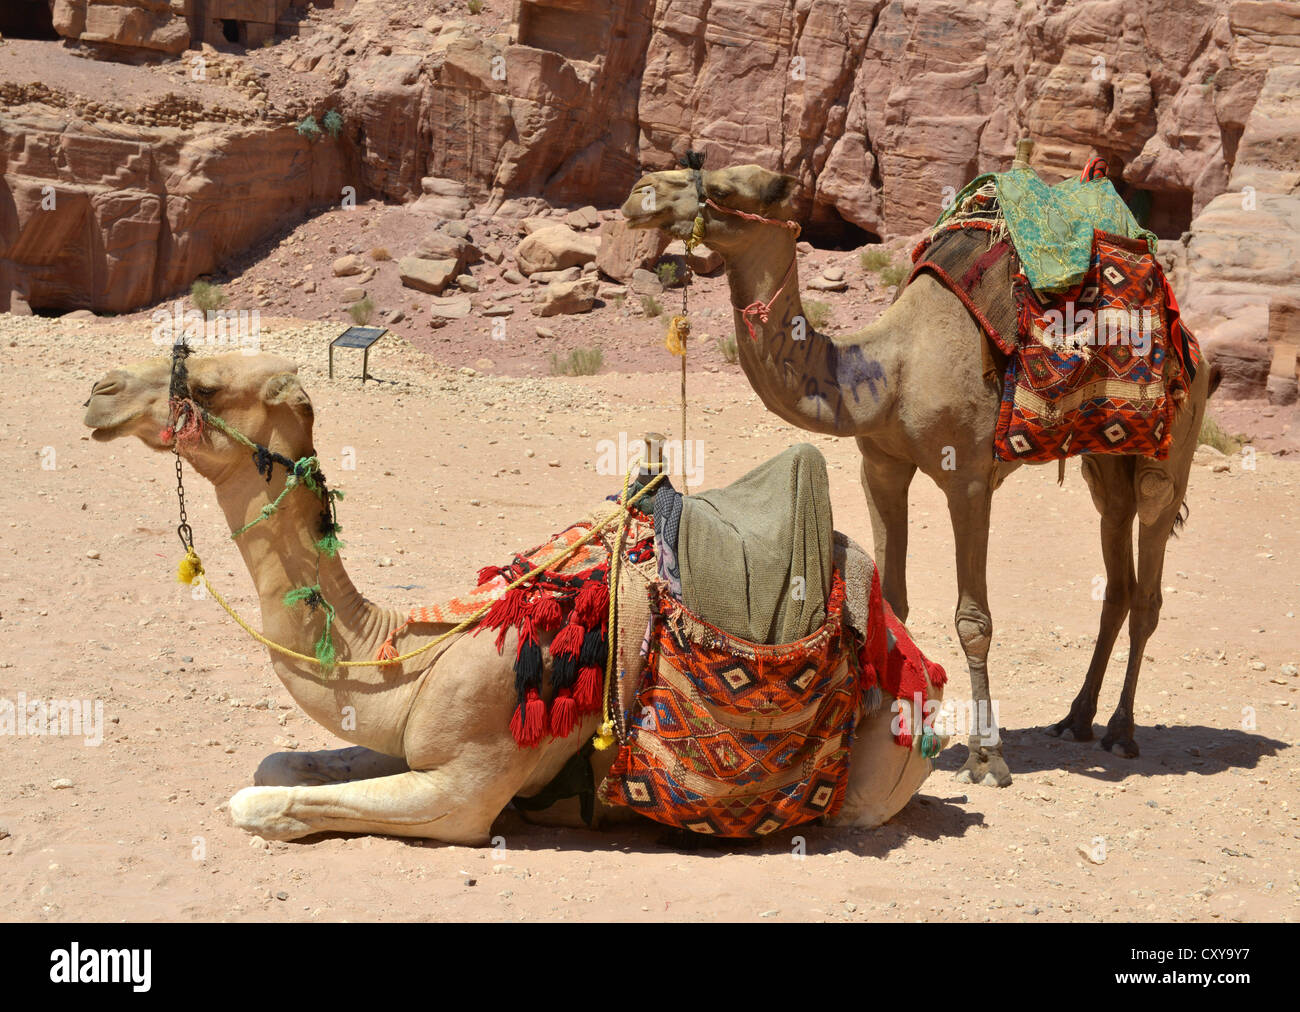 Camels for hire, Petra, Jordan. Stock Photo